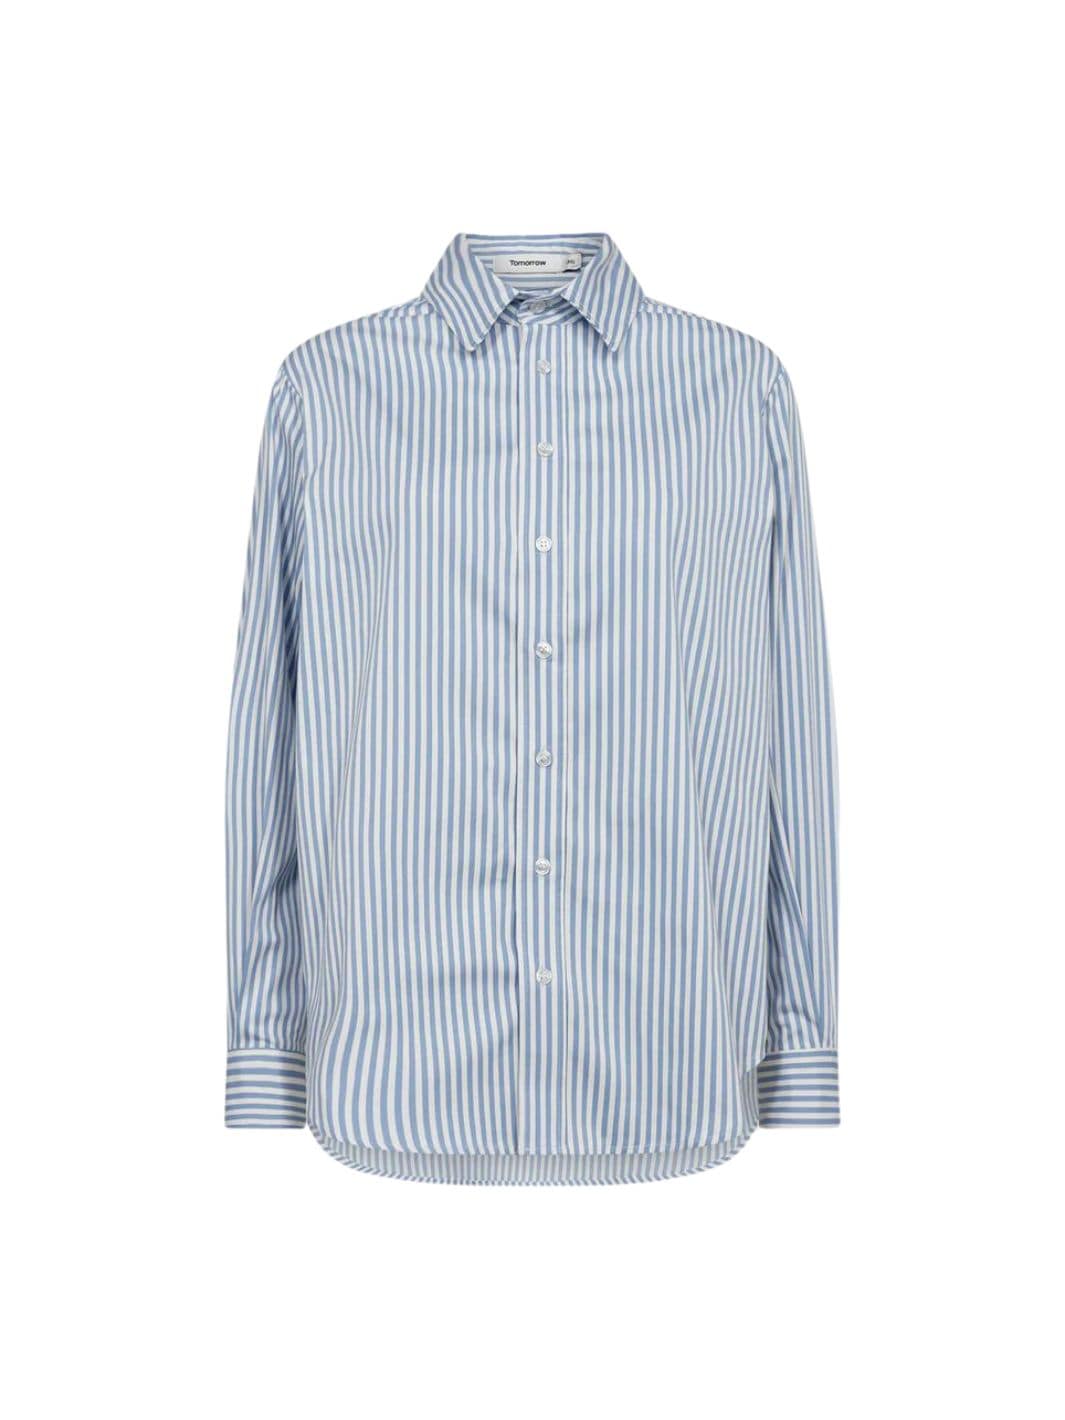 Tomorrow Shirts Skjorte | Moussa Shirt Striped Sky Blue